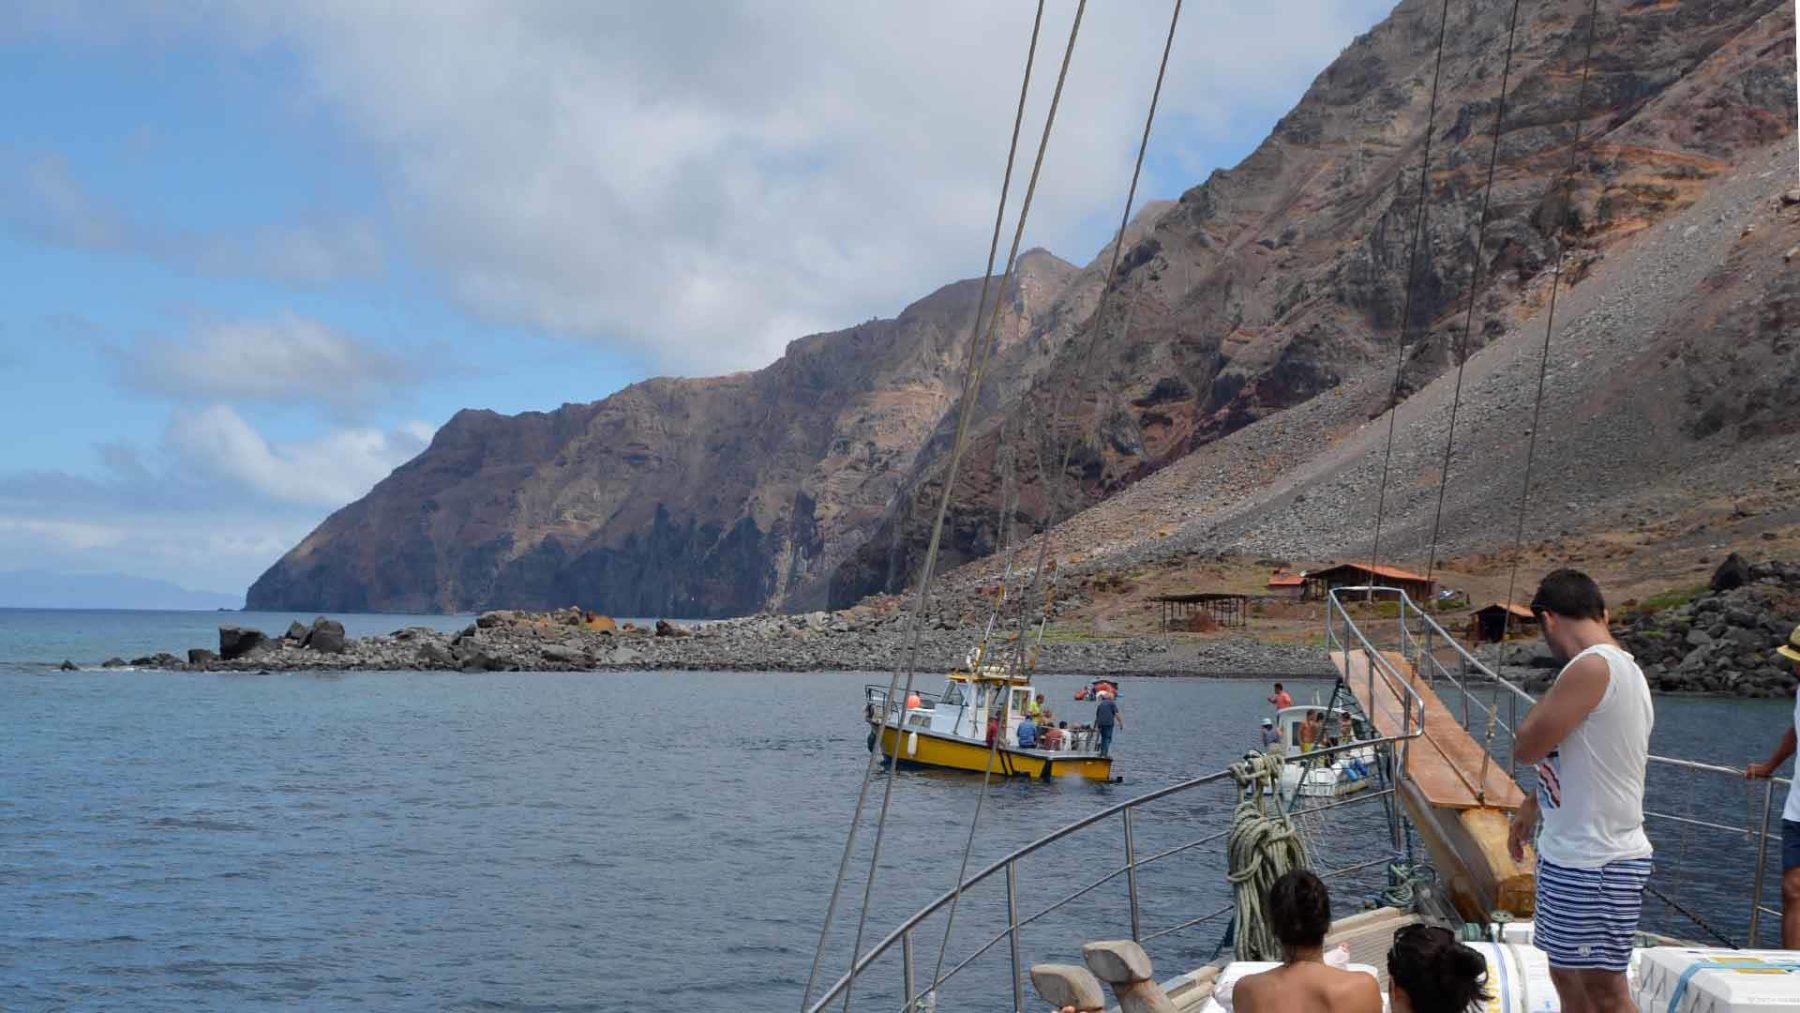 Deserta Grande is het enige eiland van de Ilhas Desertas eilanden van Madeira dat je kunt bezoeken.